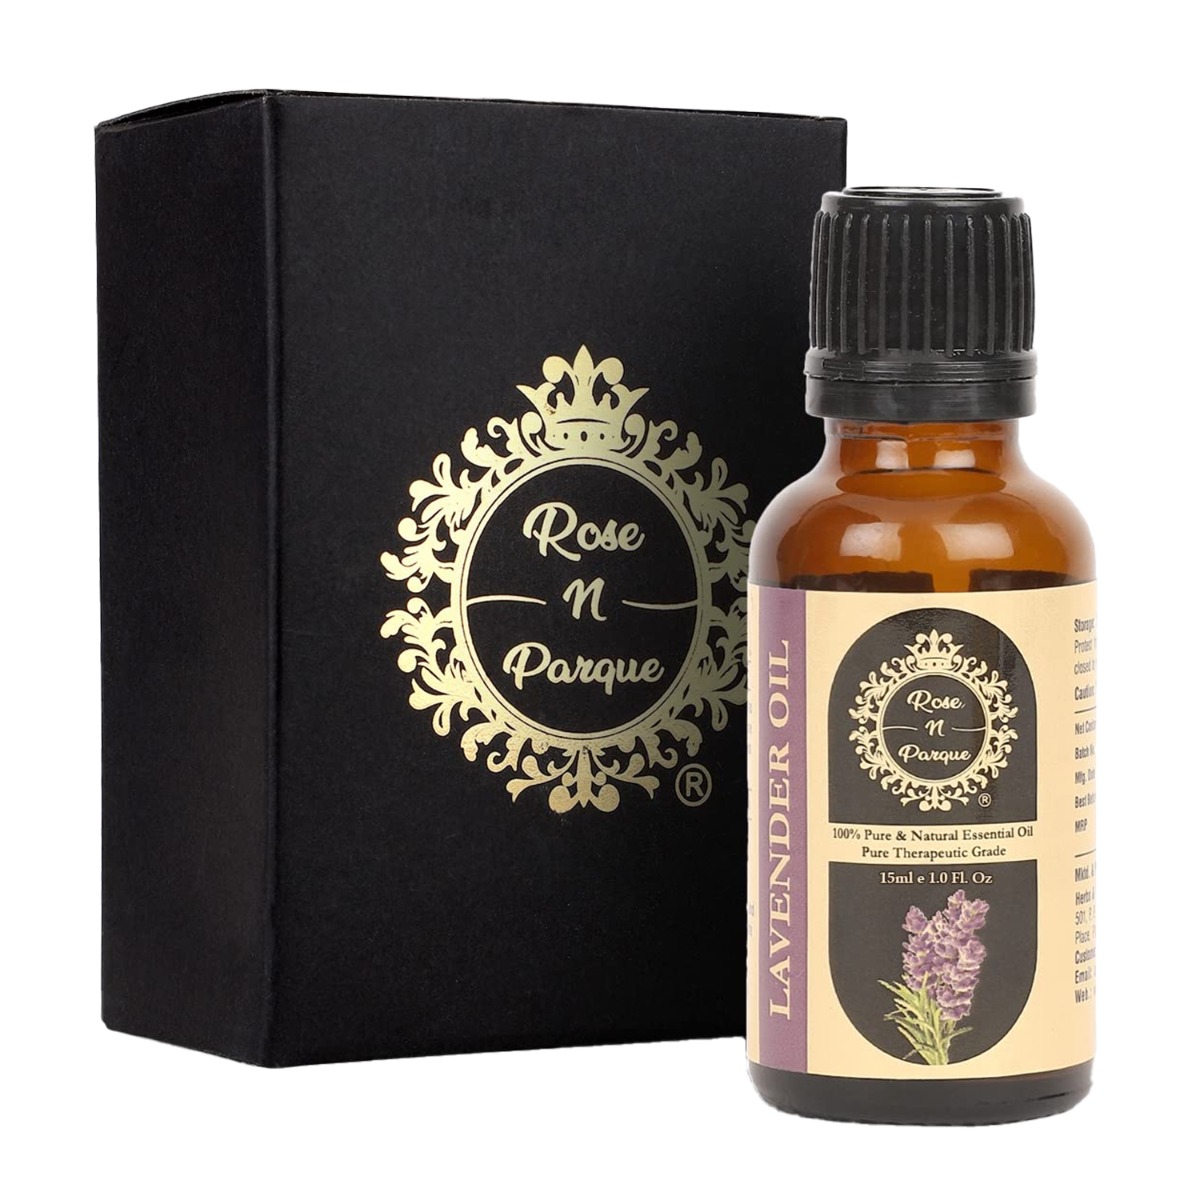 RosenParque 100% Pure & Natural Lavender Essential Oil, 15ml